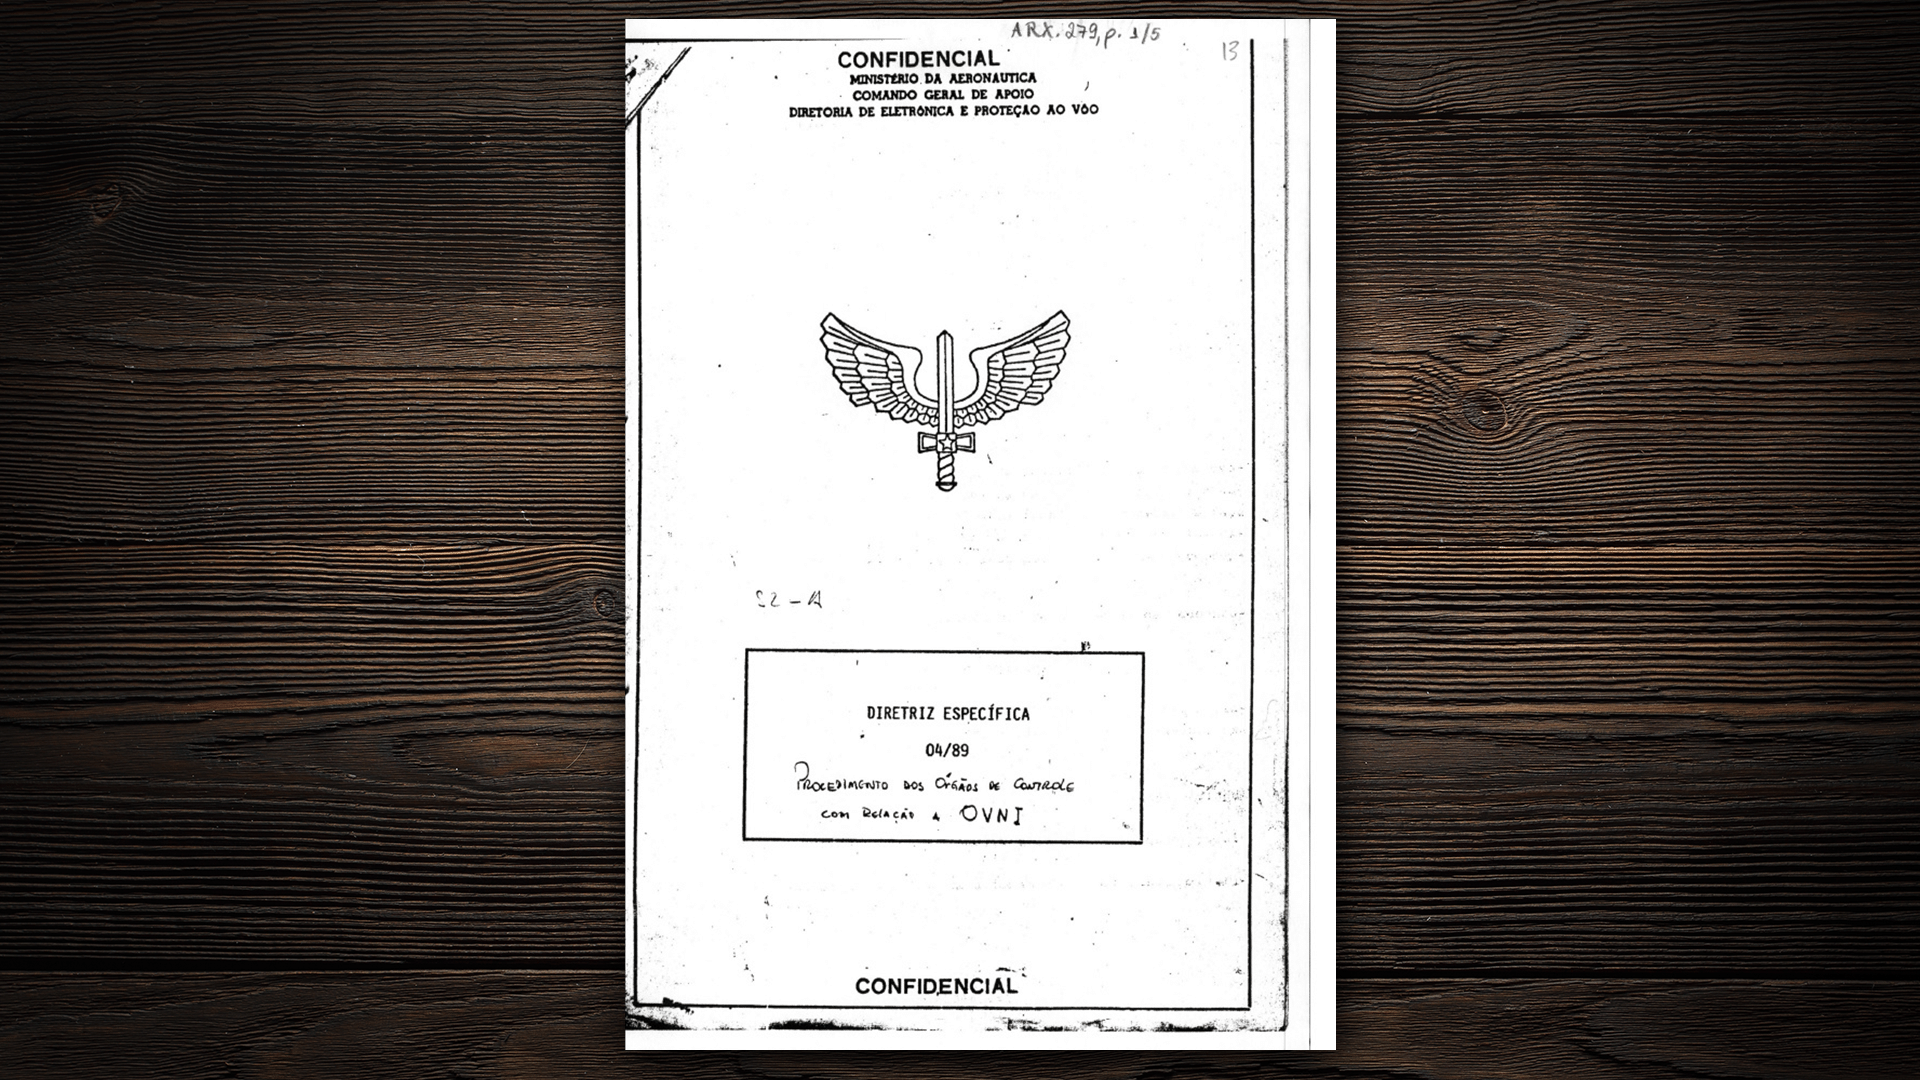 9.ago.2017 - Entre 1969 e 1972, a Força Aérea teve uma divisão especial para investigar casos de óvnis, produzindo relatórios e orientações gerais - Arte/UOL